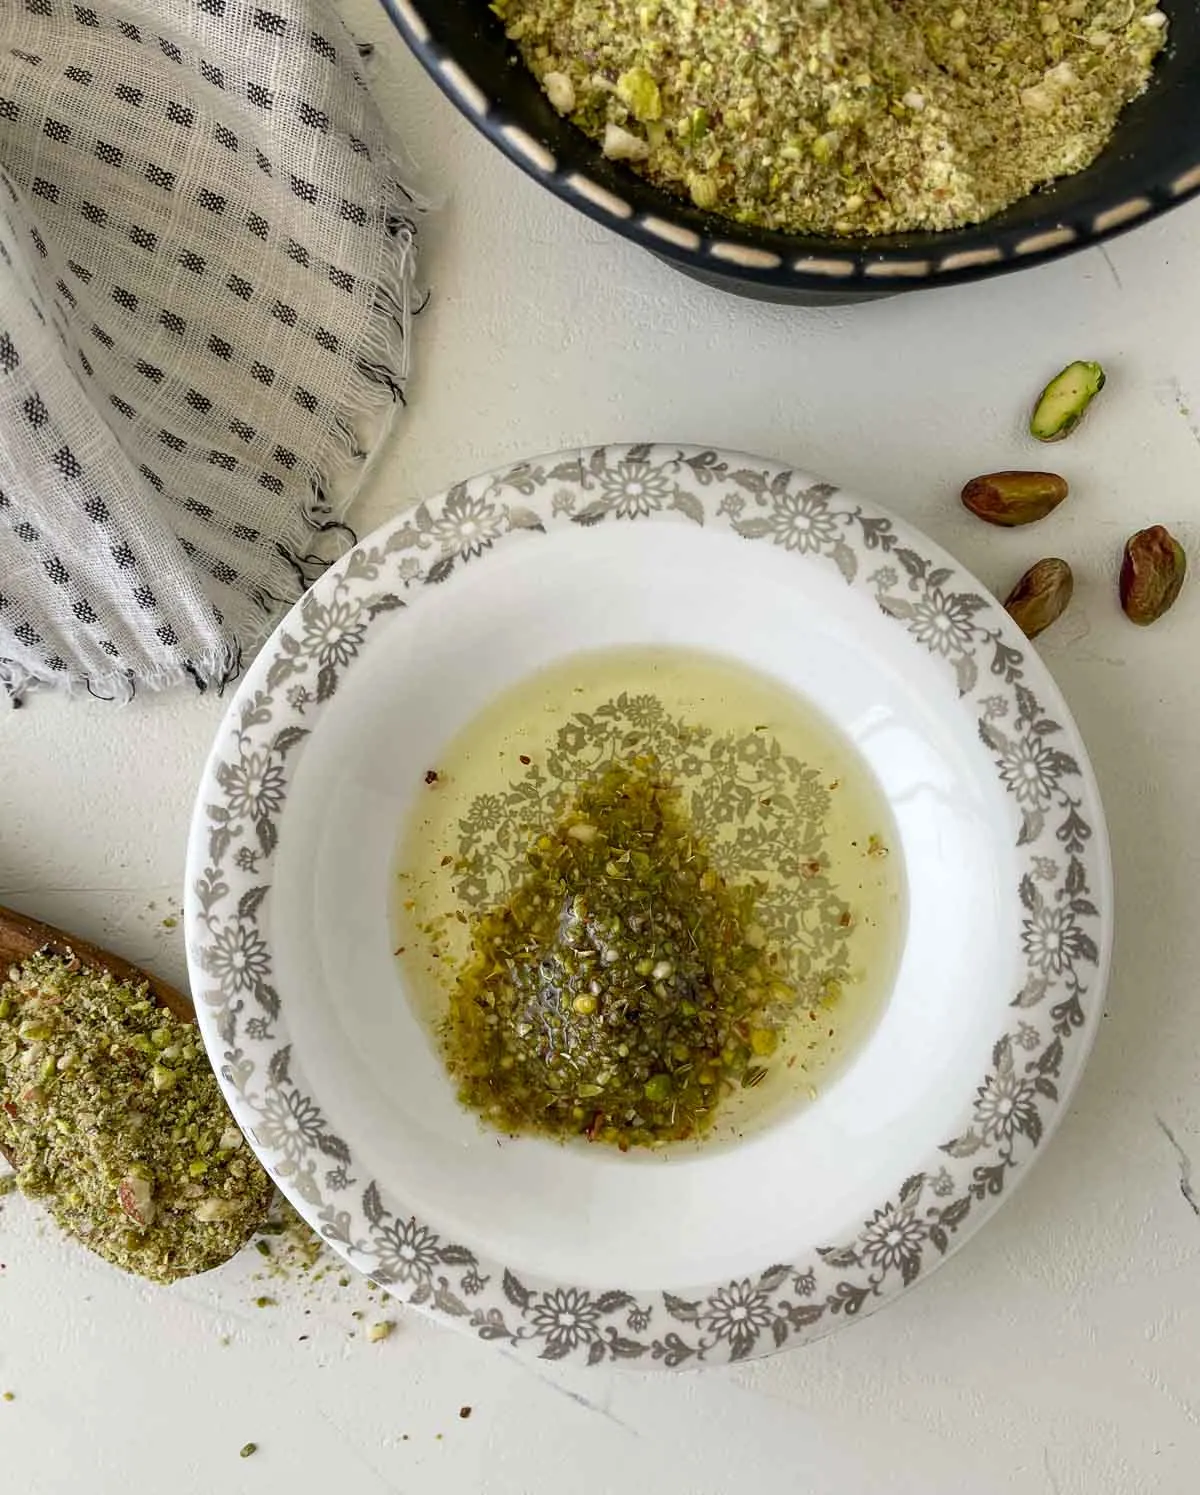 Dukkah seasoning in a bowl of olive oil